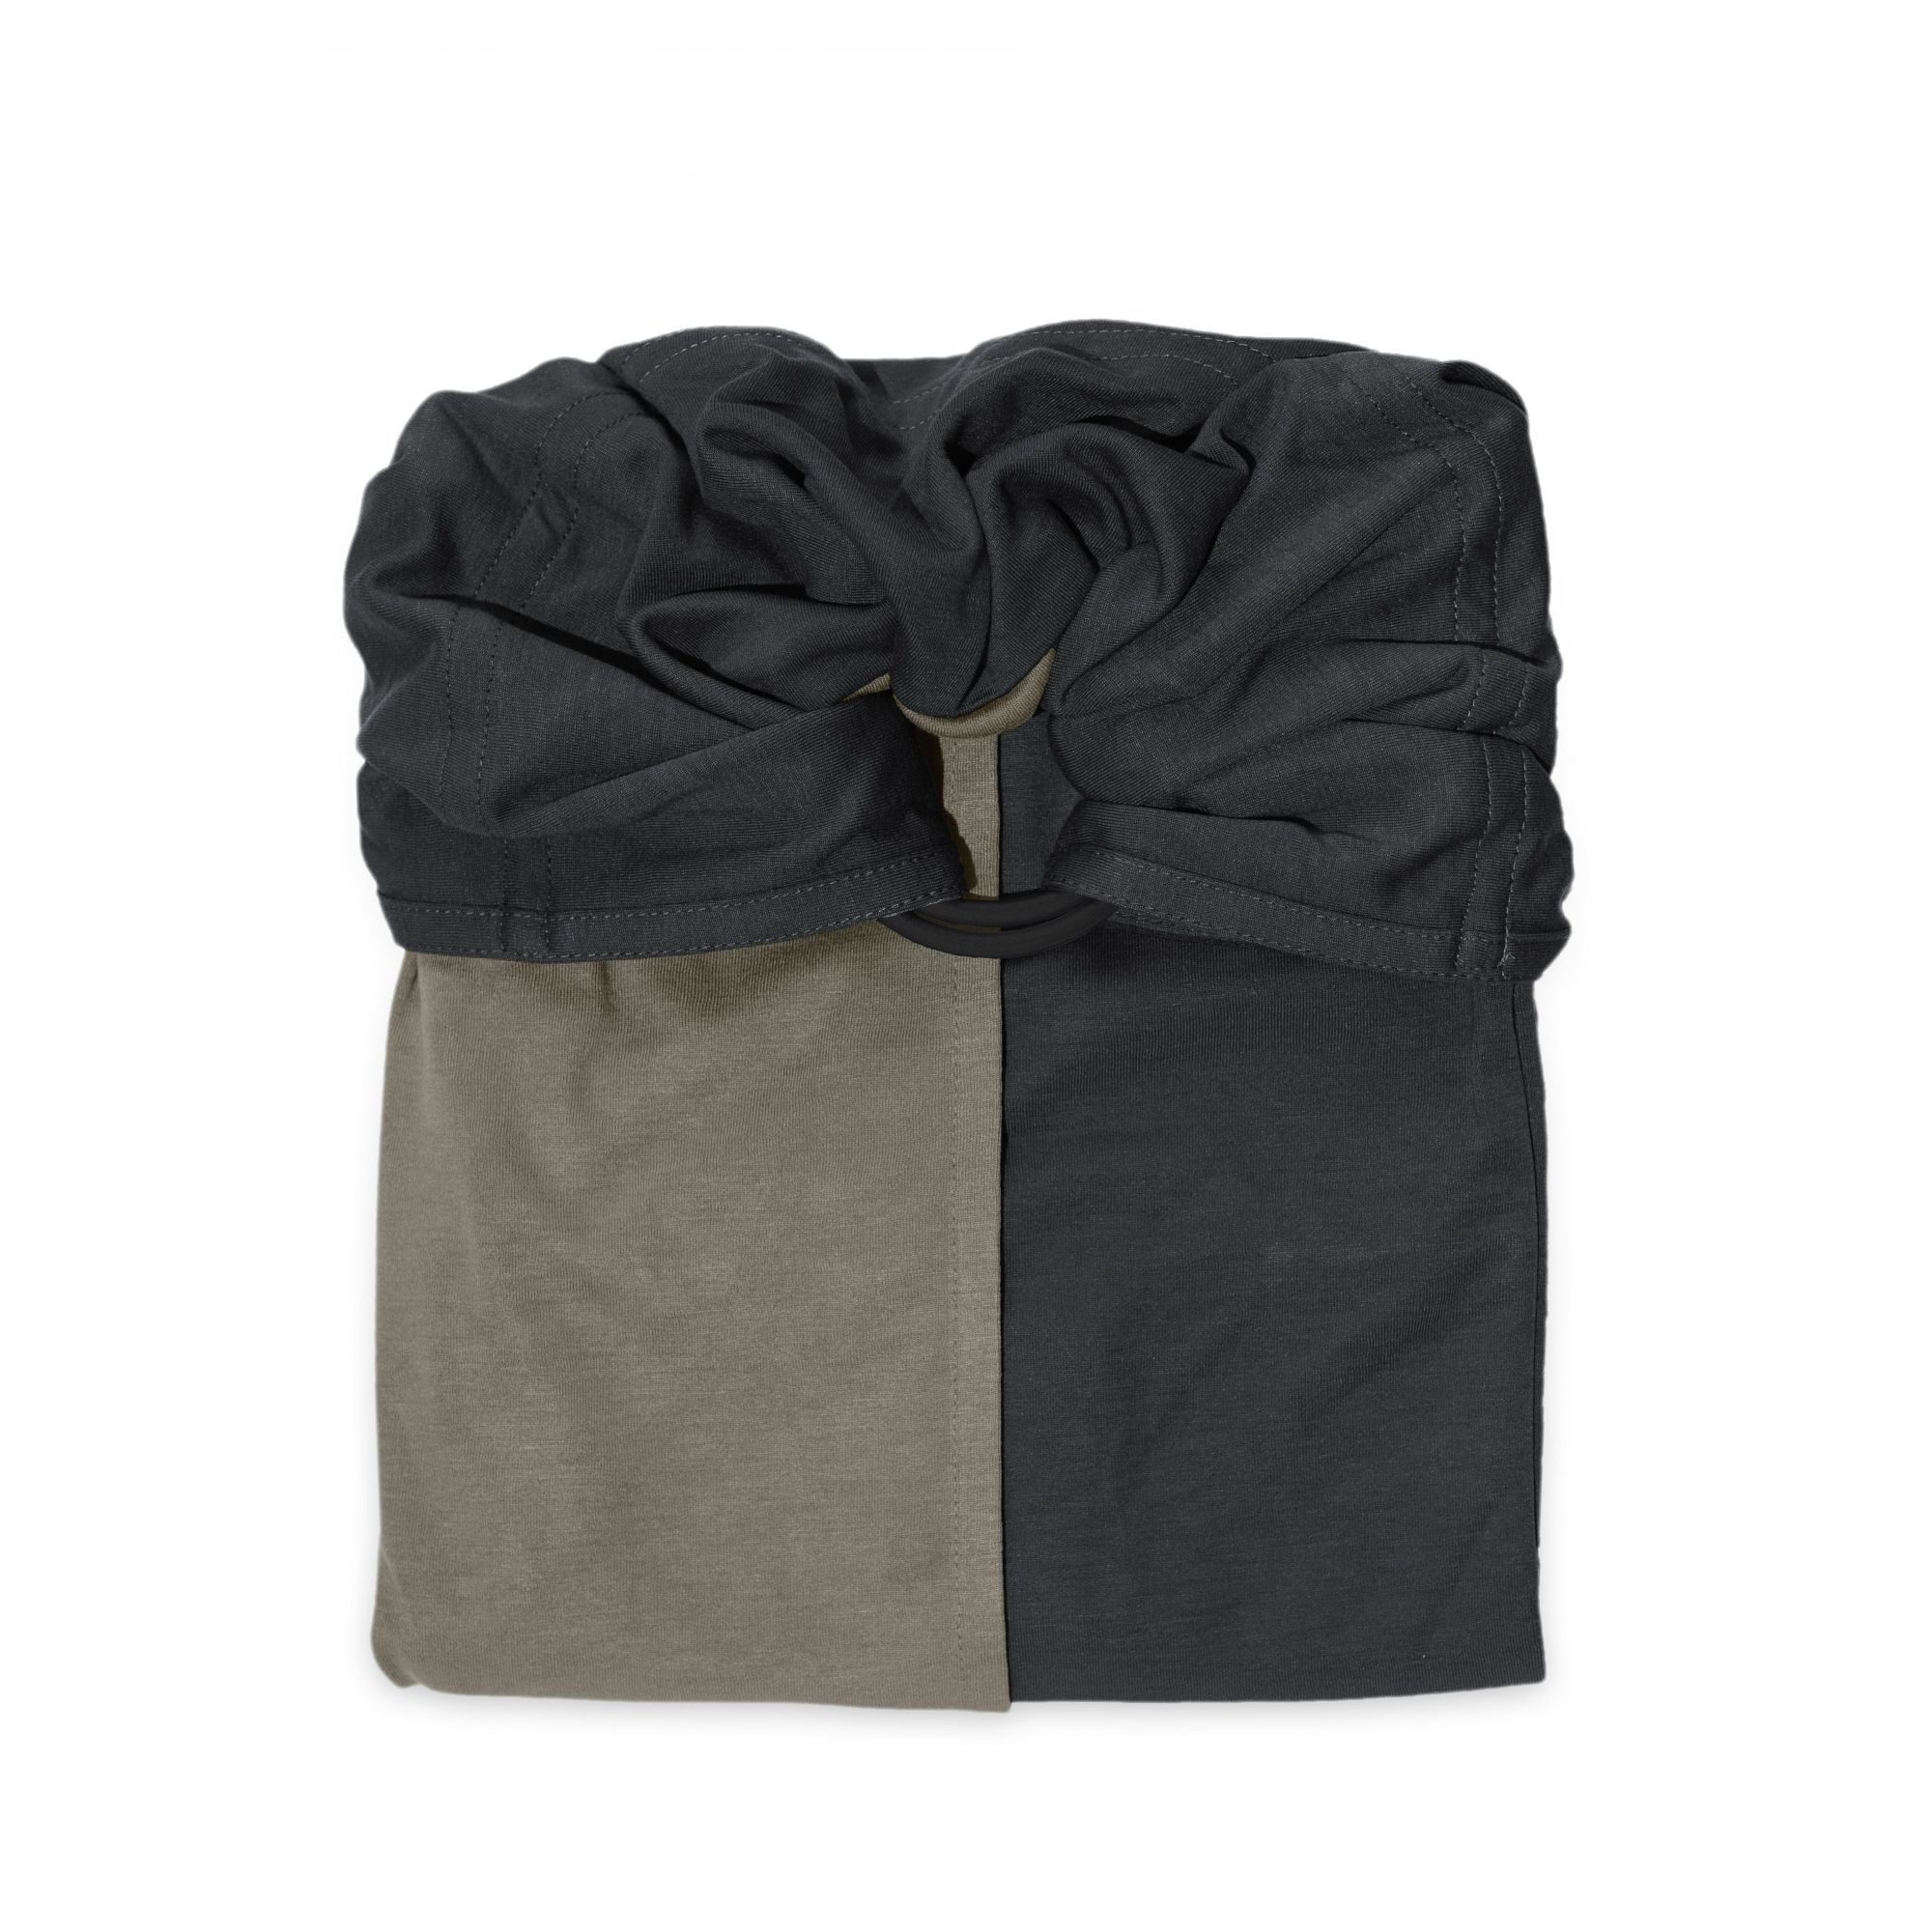 Petite écharpe de portage sans nœud Anthracite et olive - Made in Bébé